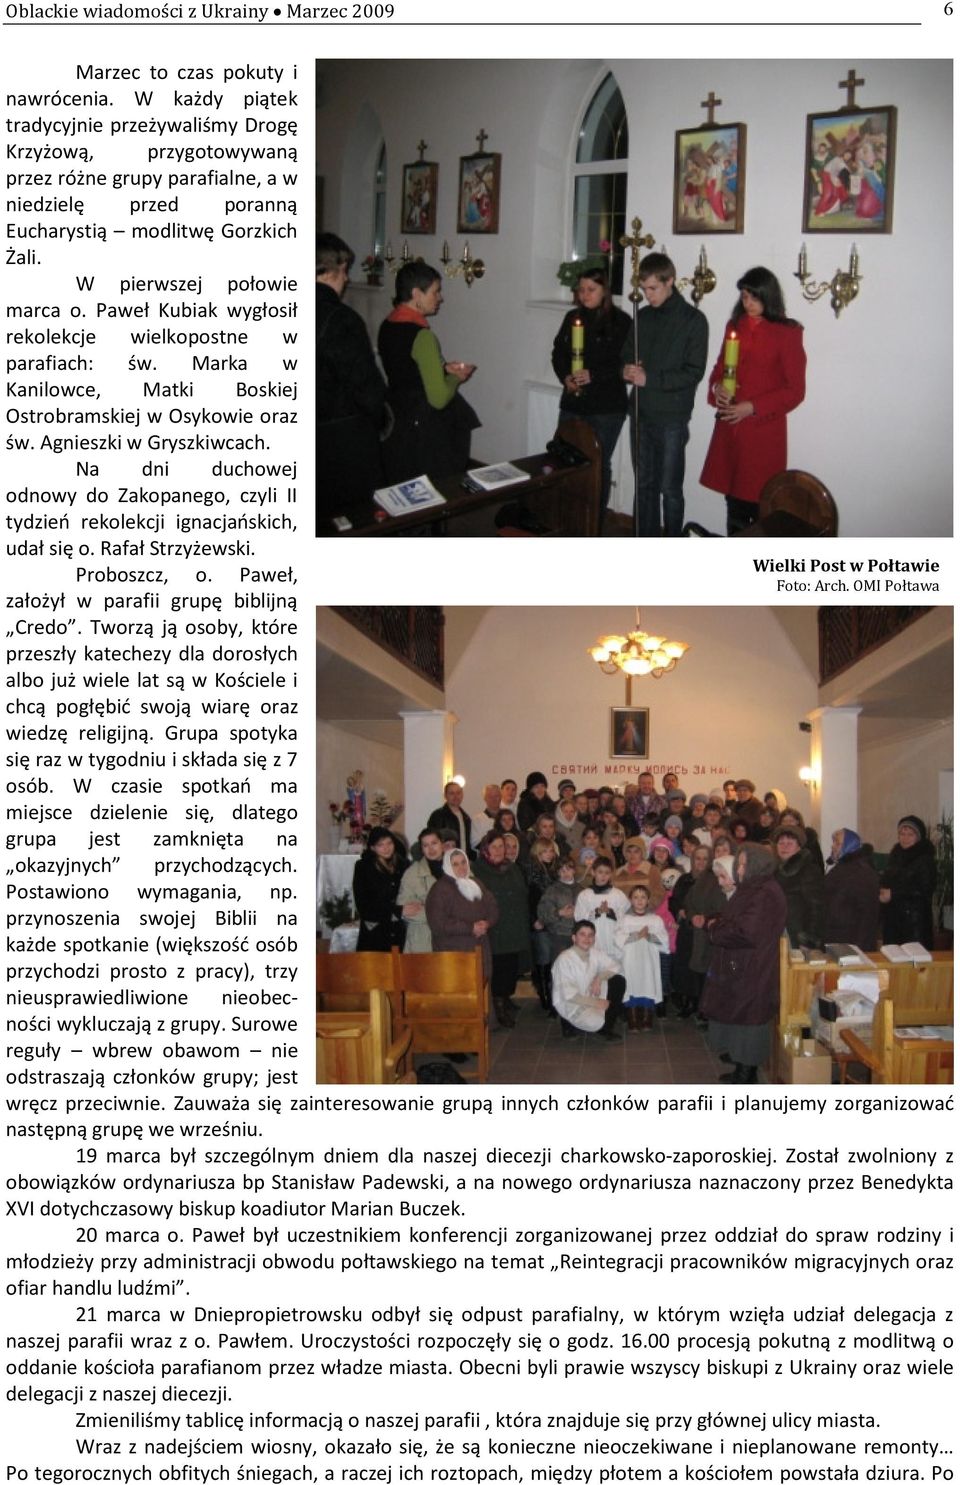 Paweł Kubiak wygłosił rekolekcje wielkopostne w parafiach: św. Marka w Kanilowce, Matki Boskiej Ostrobramskiej w Osykowie oraz św. Agnieszki w Gryszkiwcach.